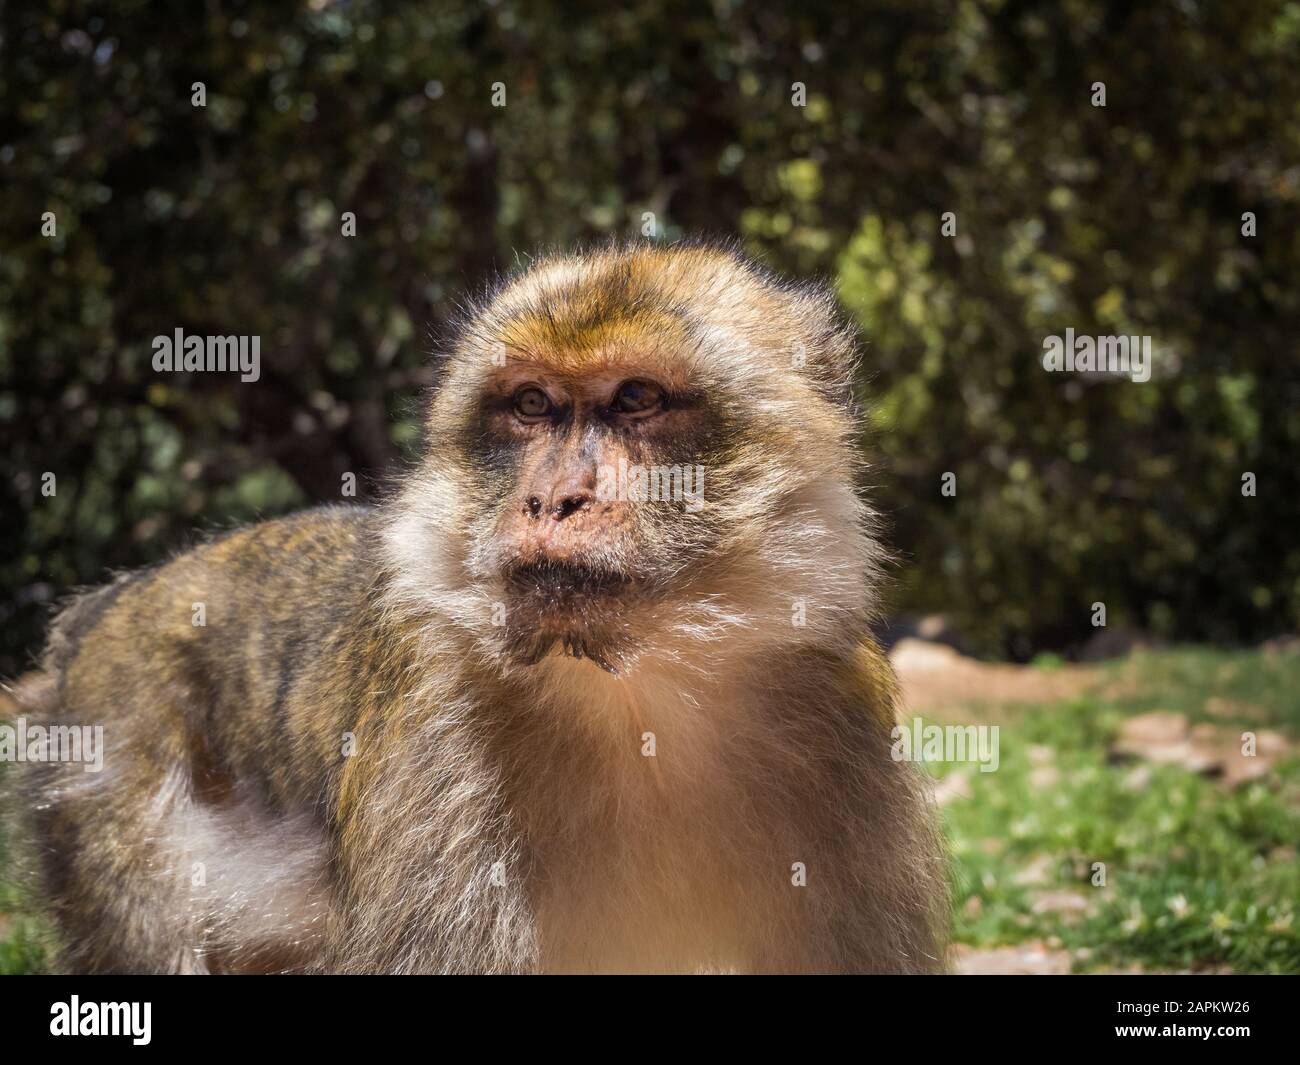 Carino Macaca Sylvanus Berber scimmia in una giungla in Marocco Foto Stock